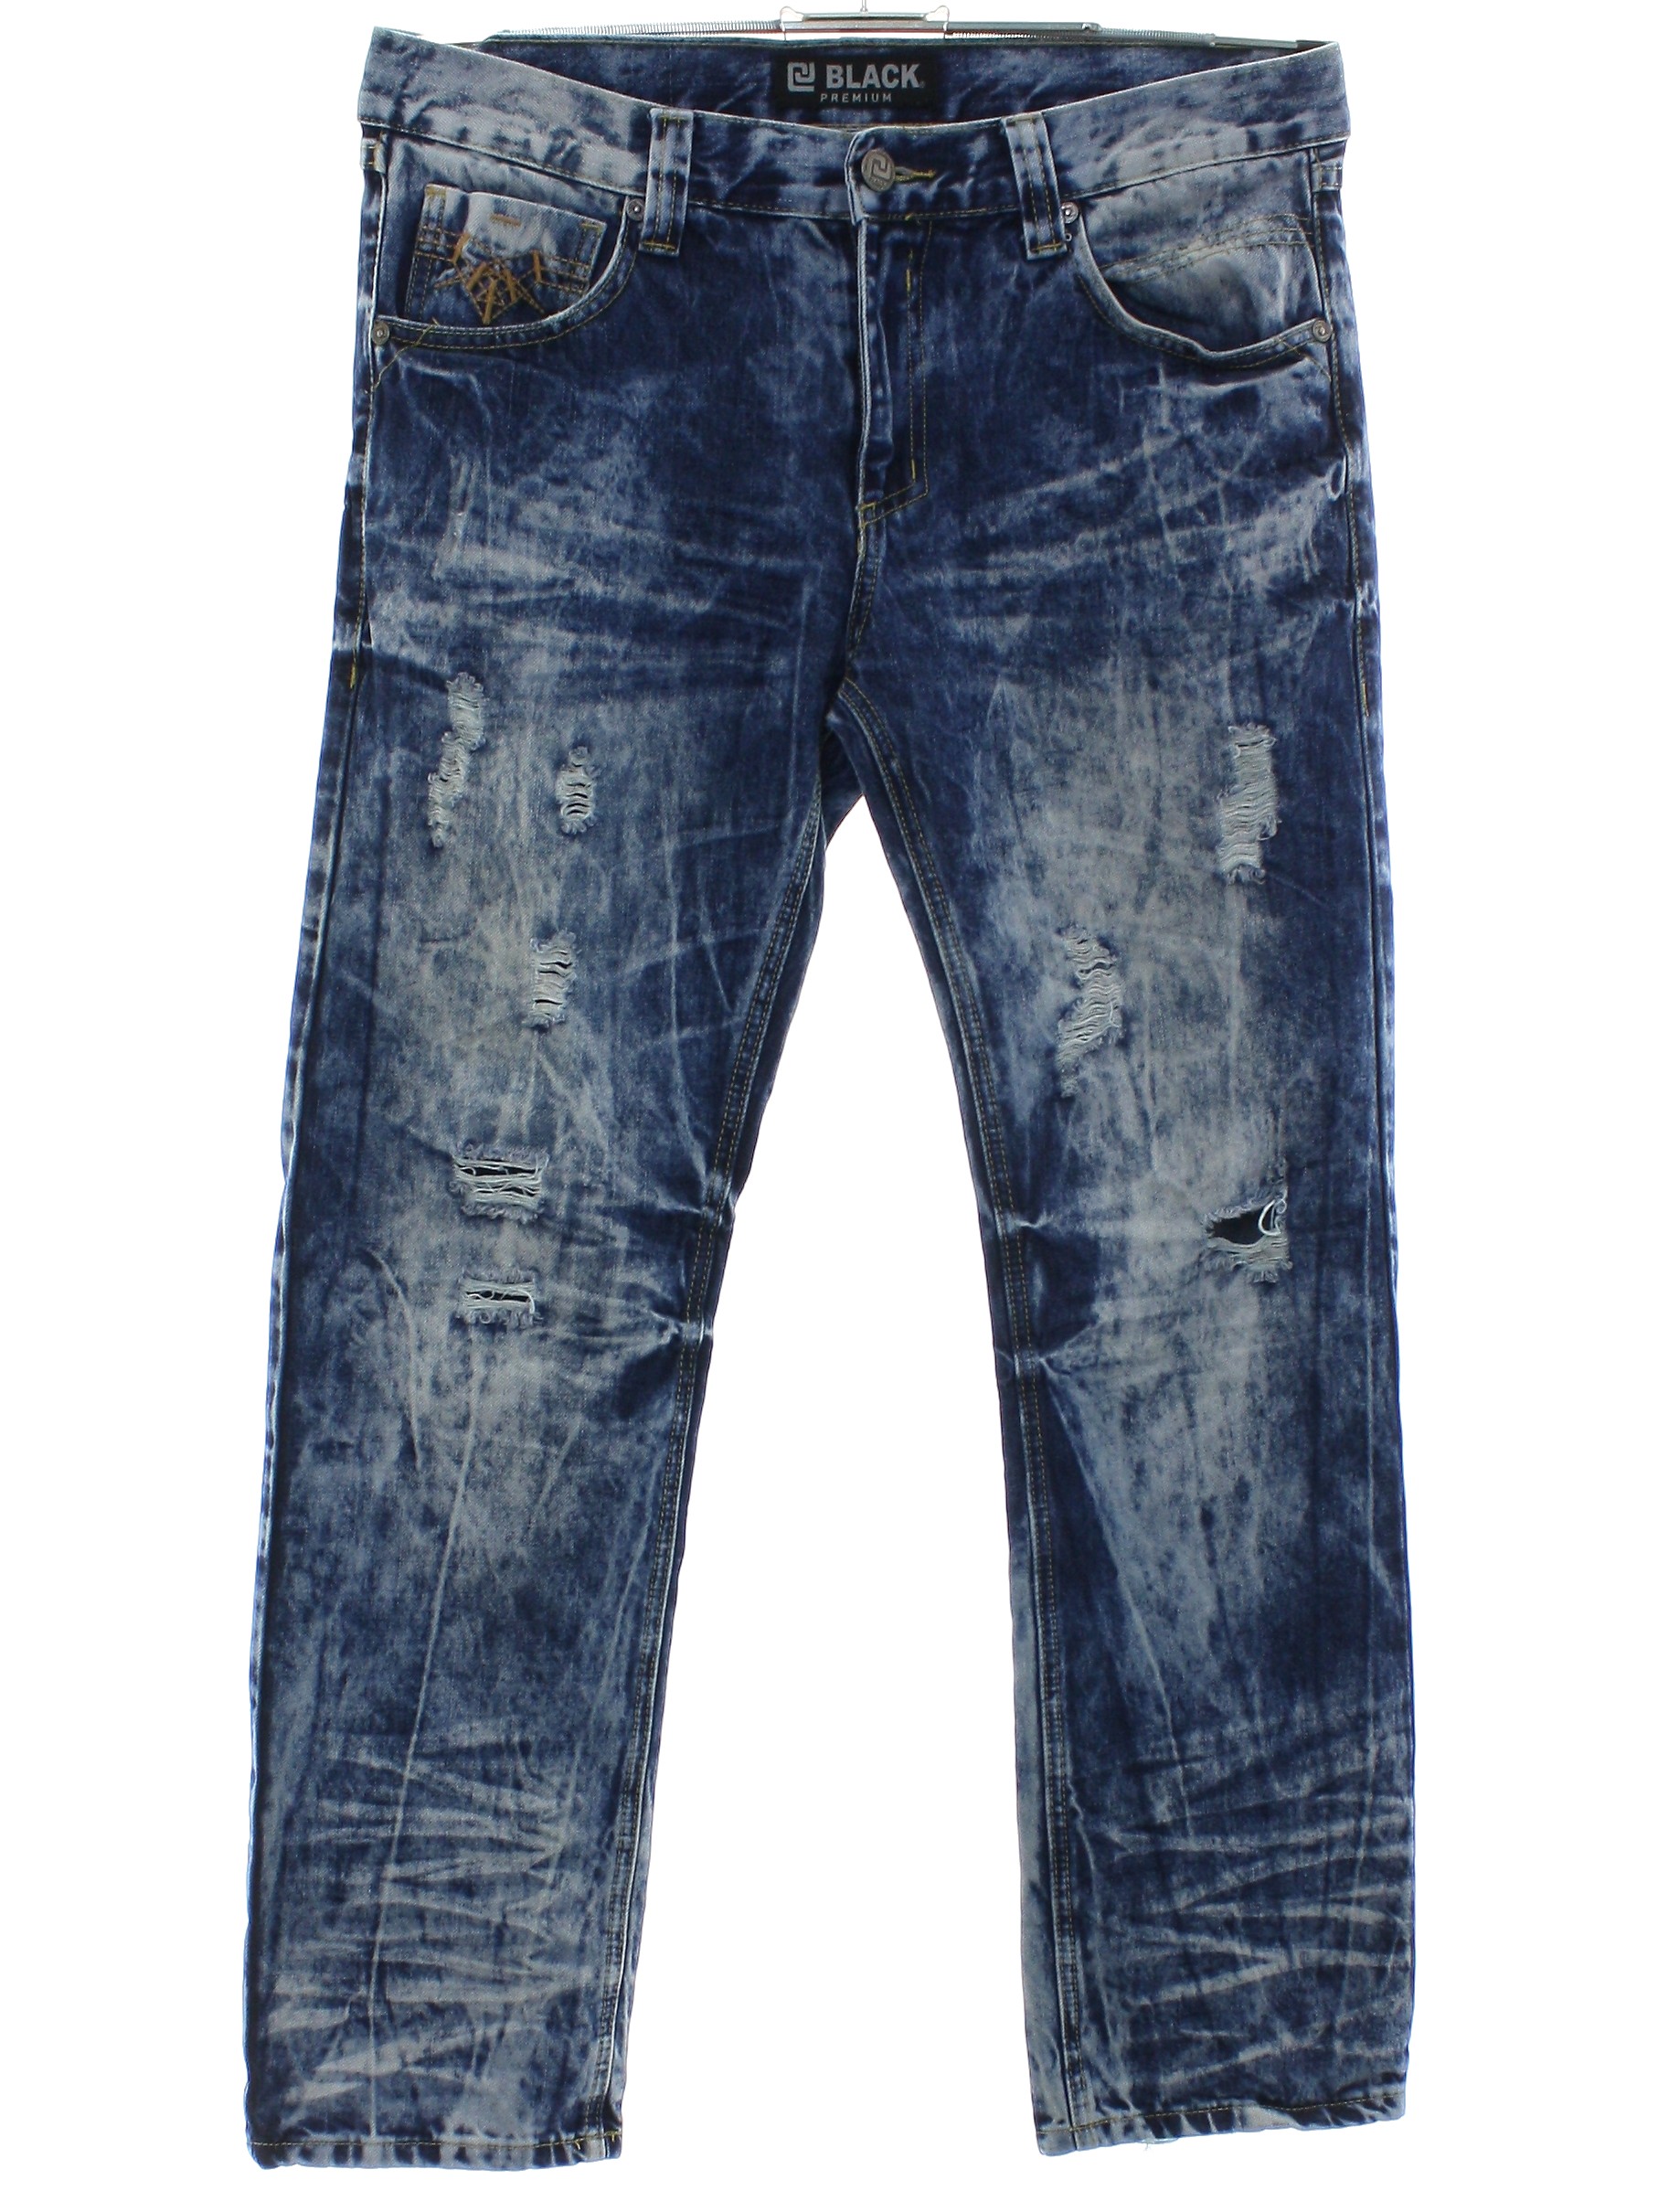 Pants: 90s (early y2k) -CJ Black Premium- Mens dark blue background ...